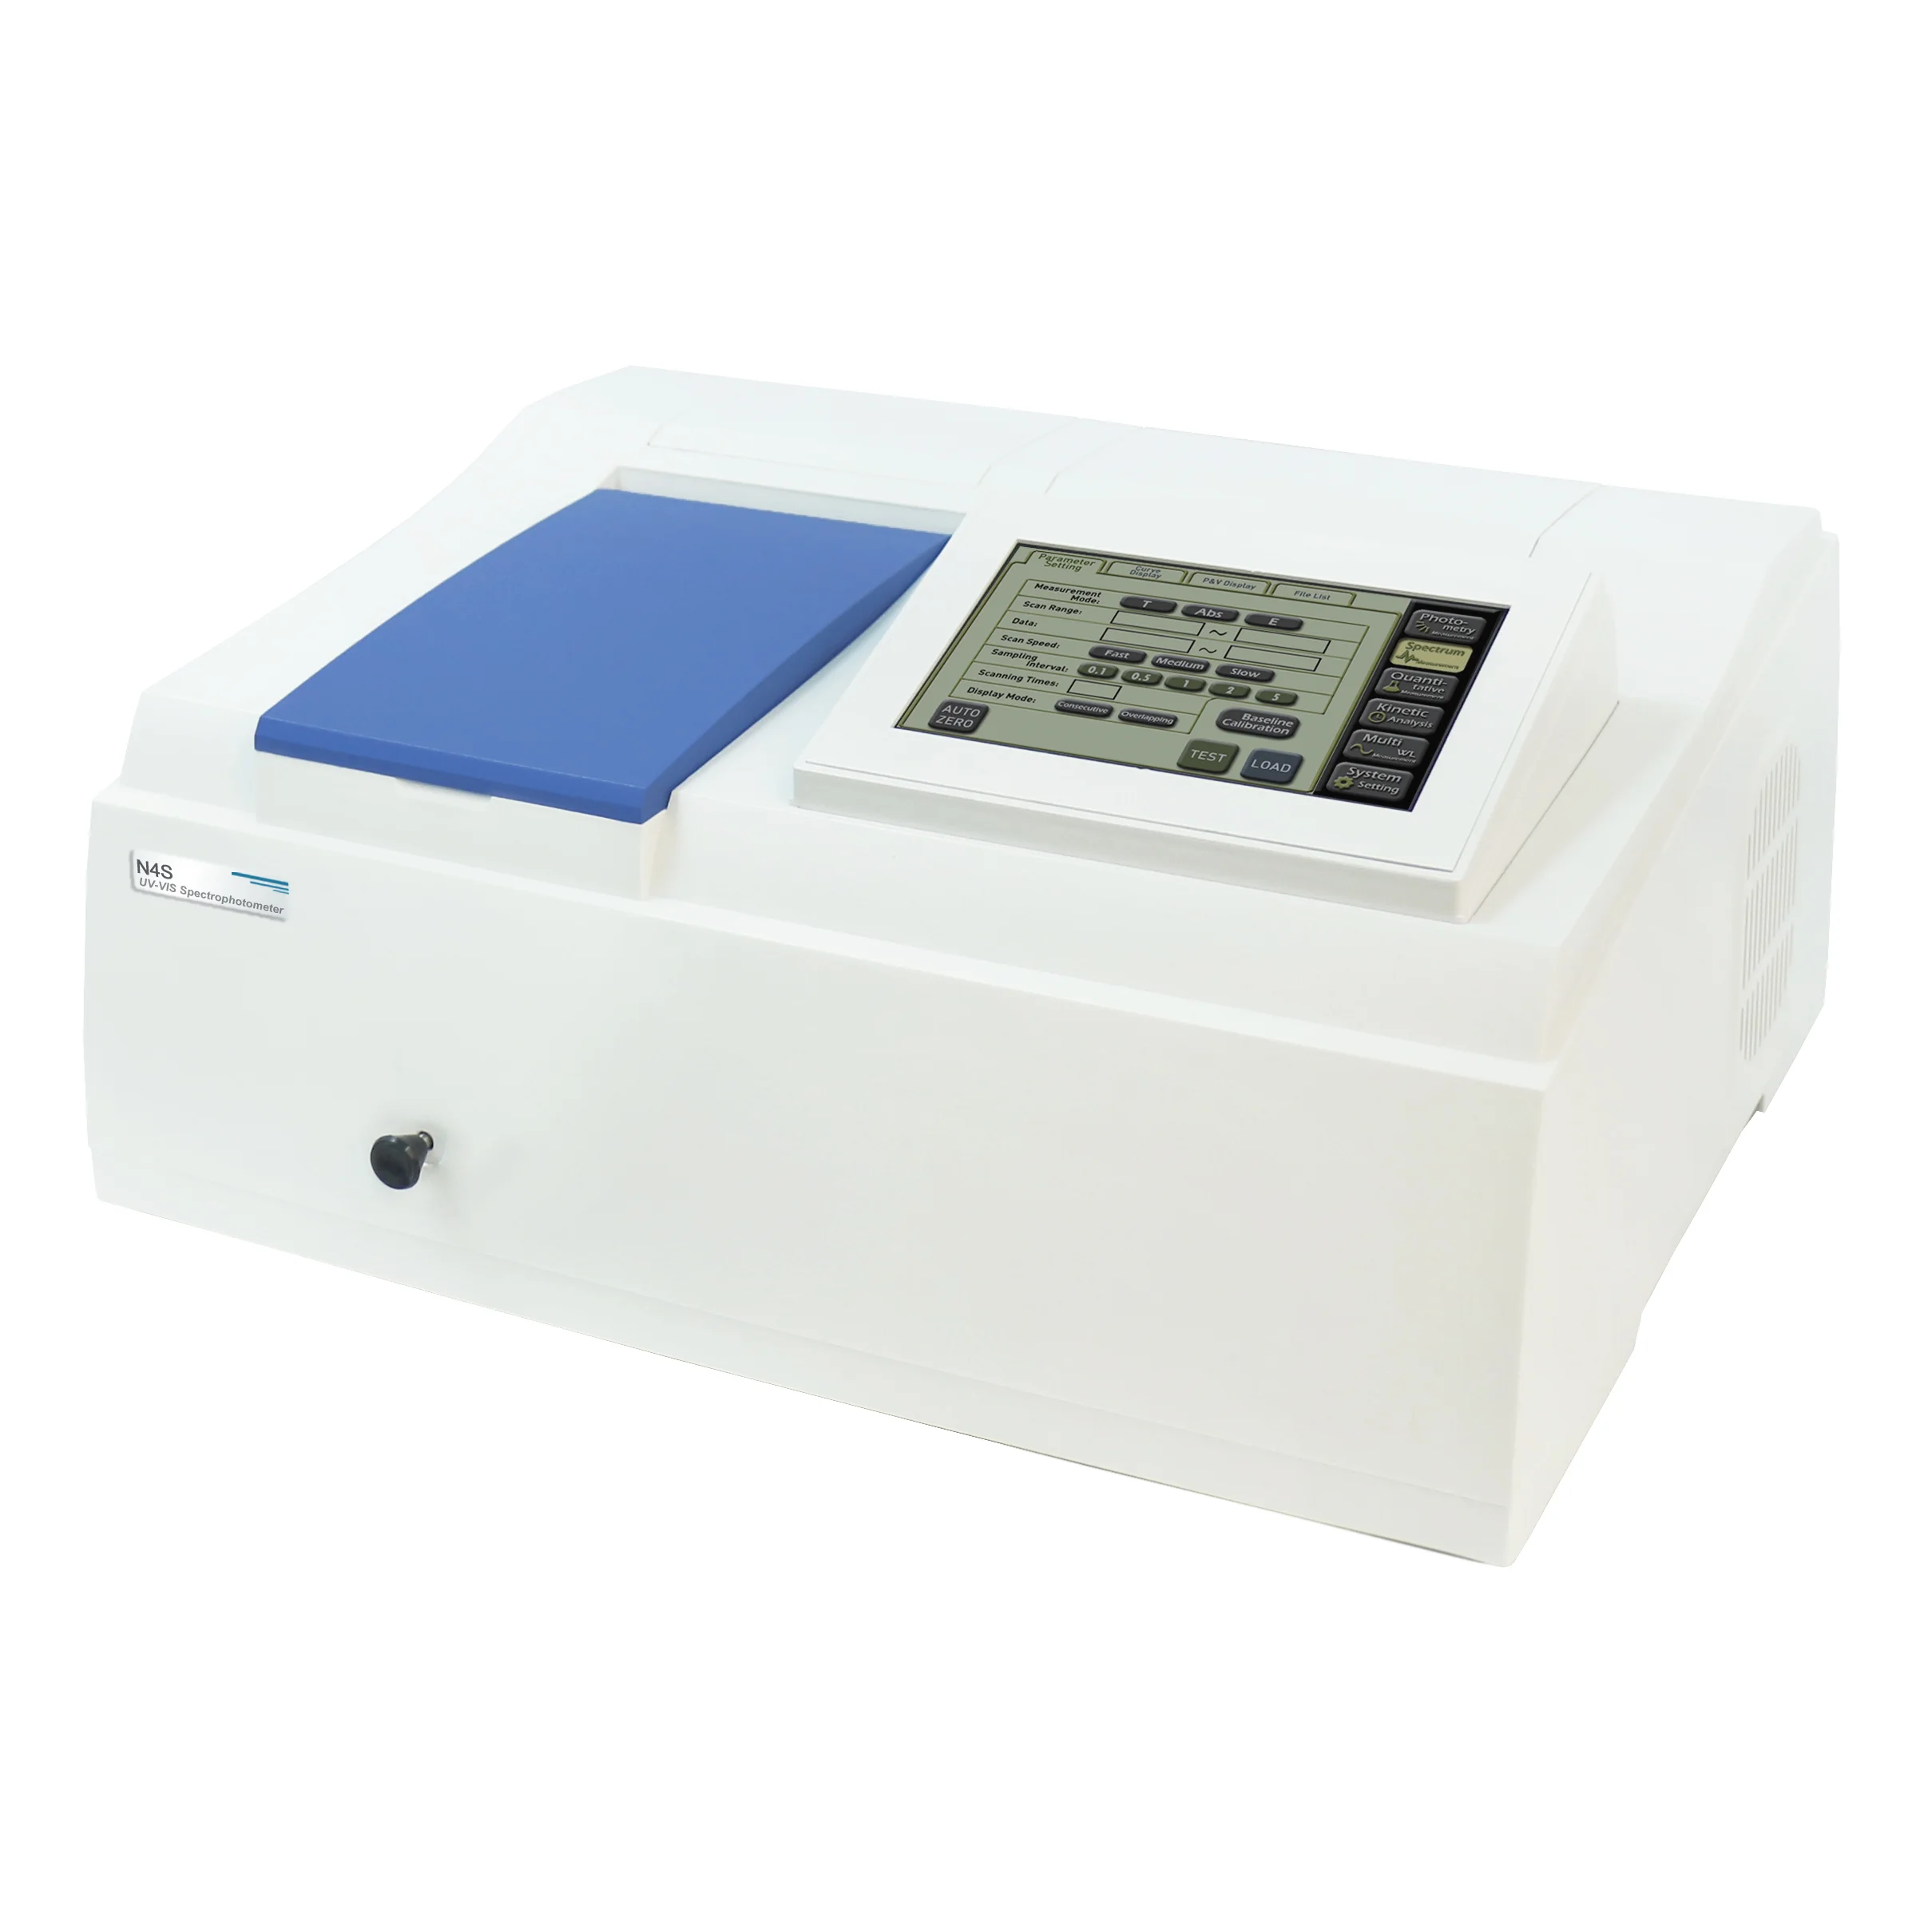 CHINCAN N4S/N4 UV-VIS Single Beam Spectrophotometer